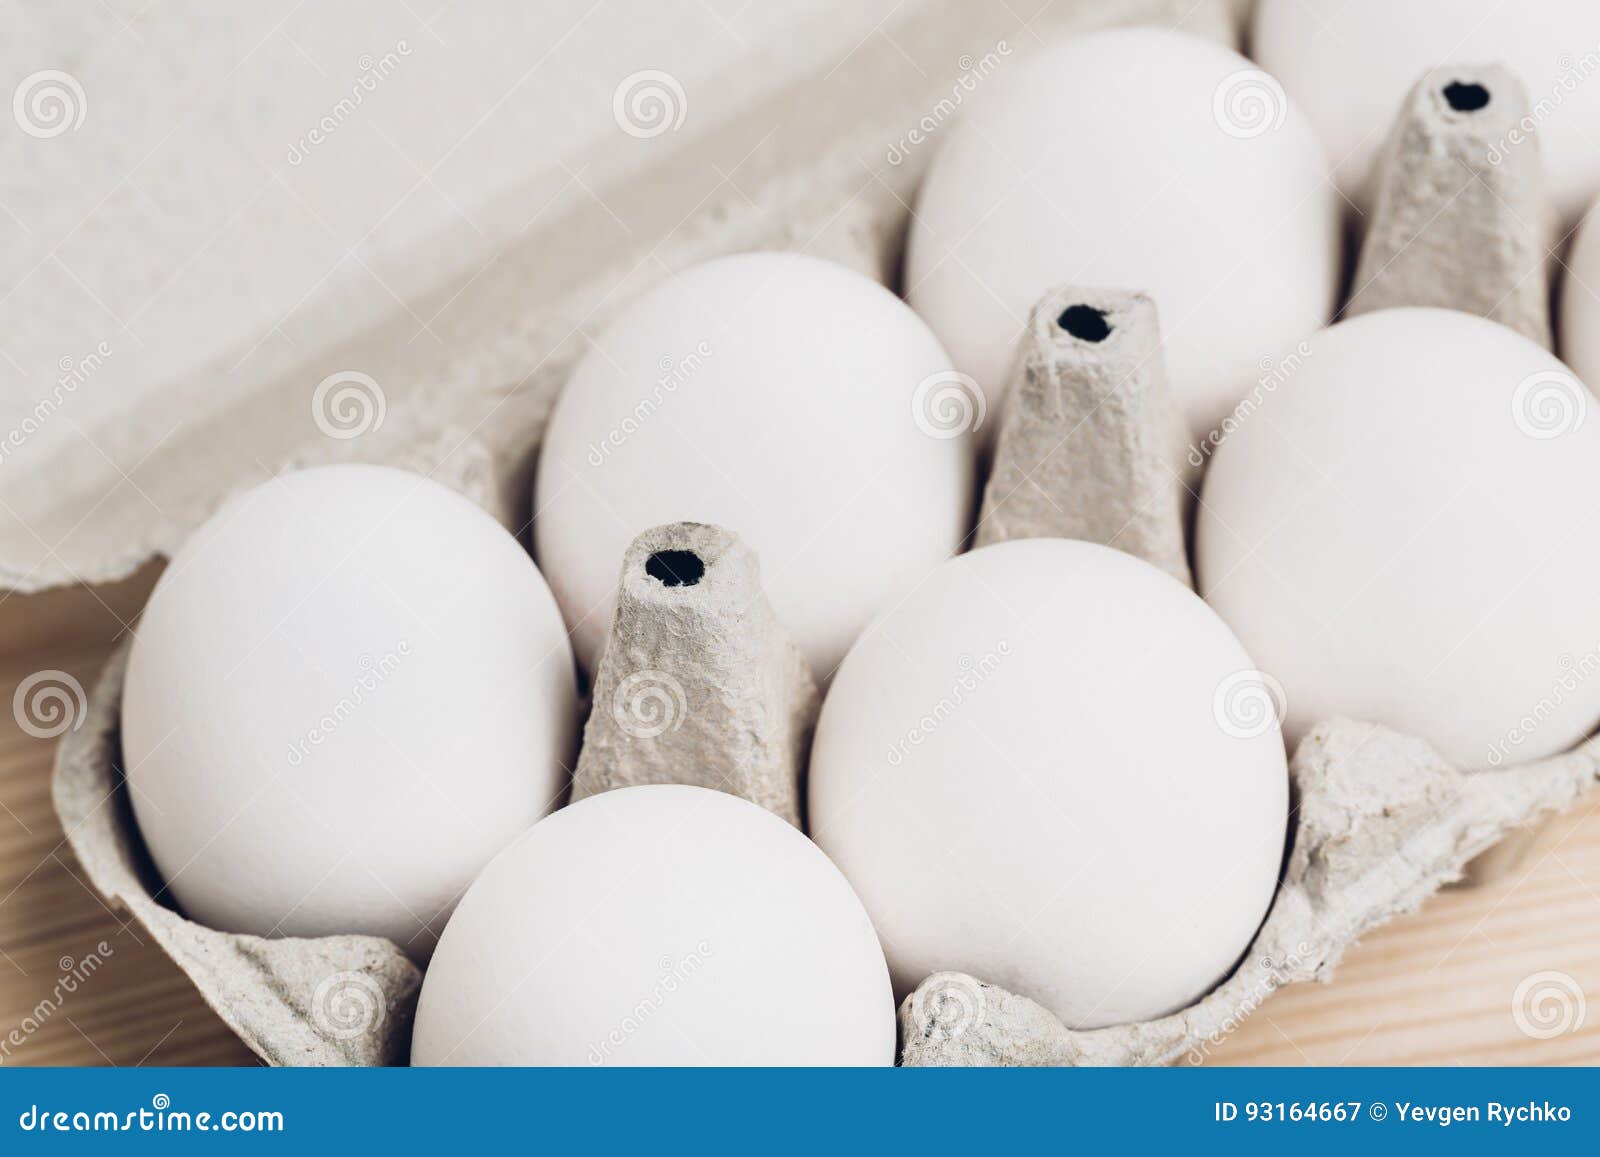 塑料鸡蛋包装盒24枚中号 手提鸡蛋托柴鸡蛋透明一次性包装礼盒-阿里巴巴